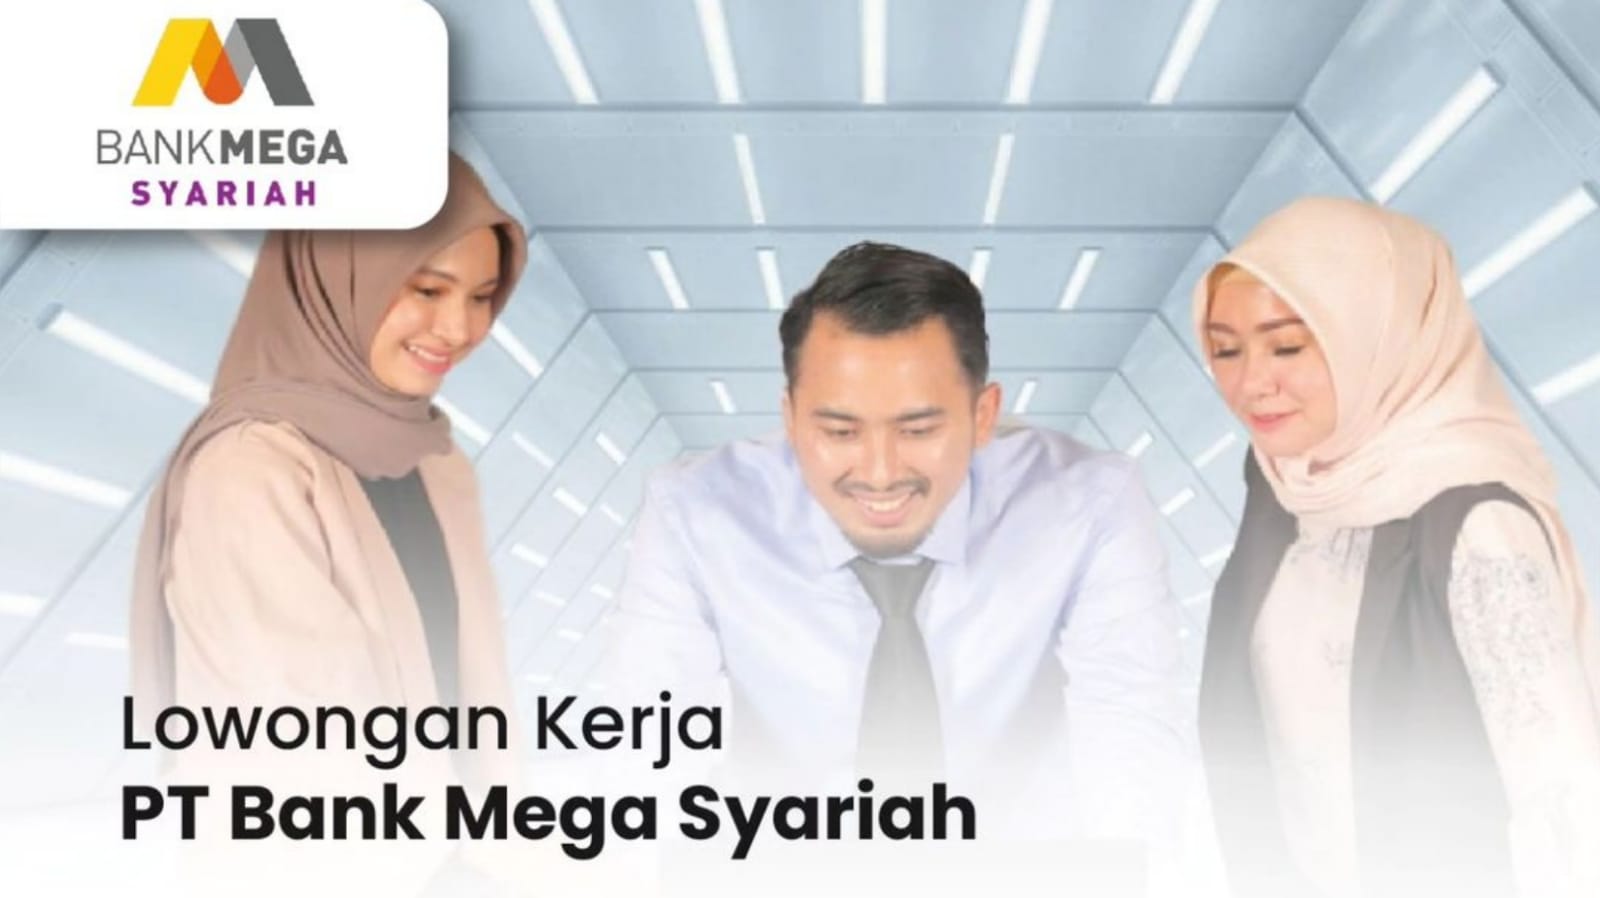 PT Bank Mega Syariah Buka Lowongan Kerja Terbaru Lulusan D3 dan S1, Simak Cara Lamarnya!